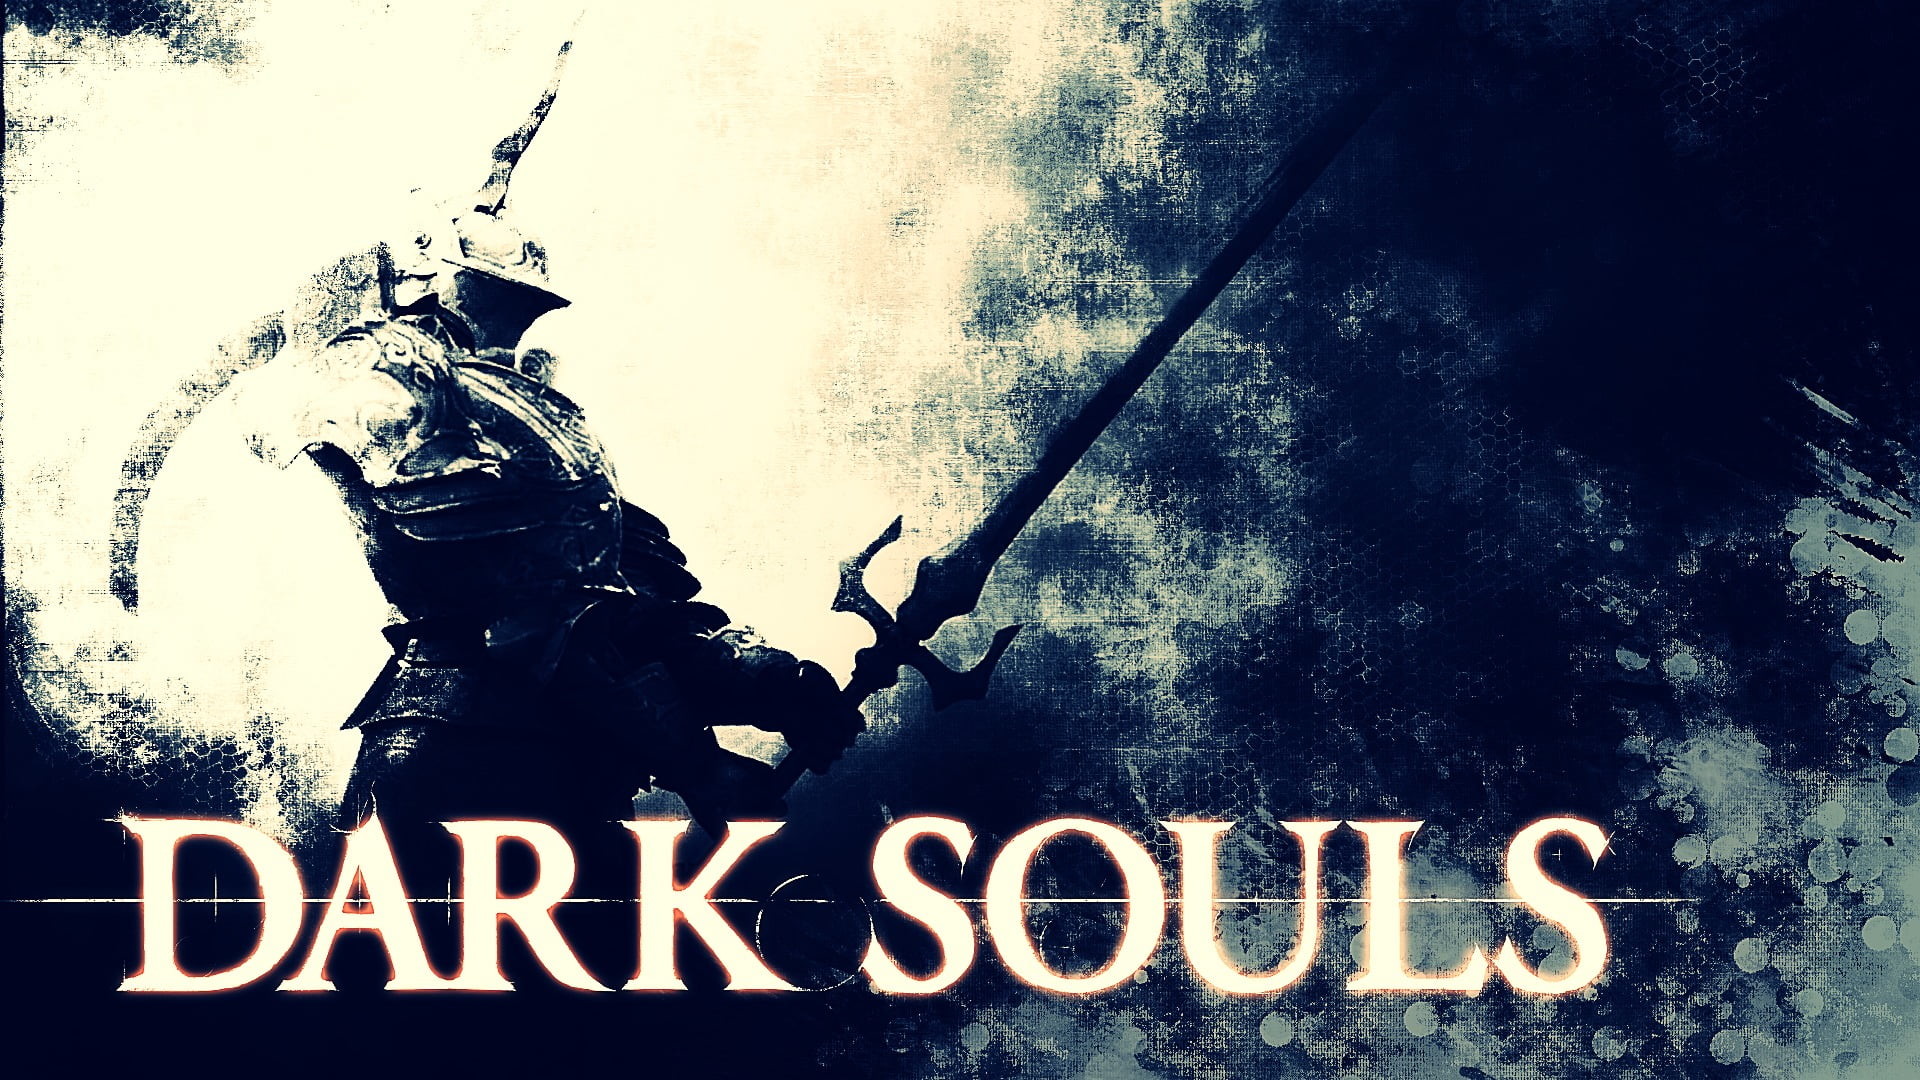 1920x1080 Dark Souls wallpaper, Dark Souls II, video games, Demon's Souls